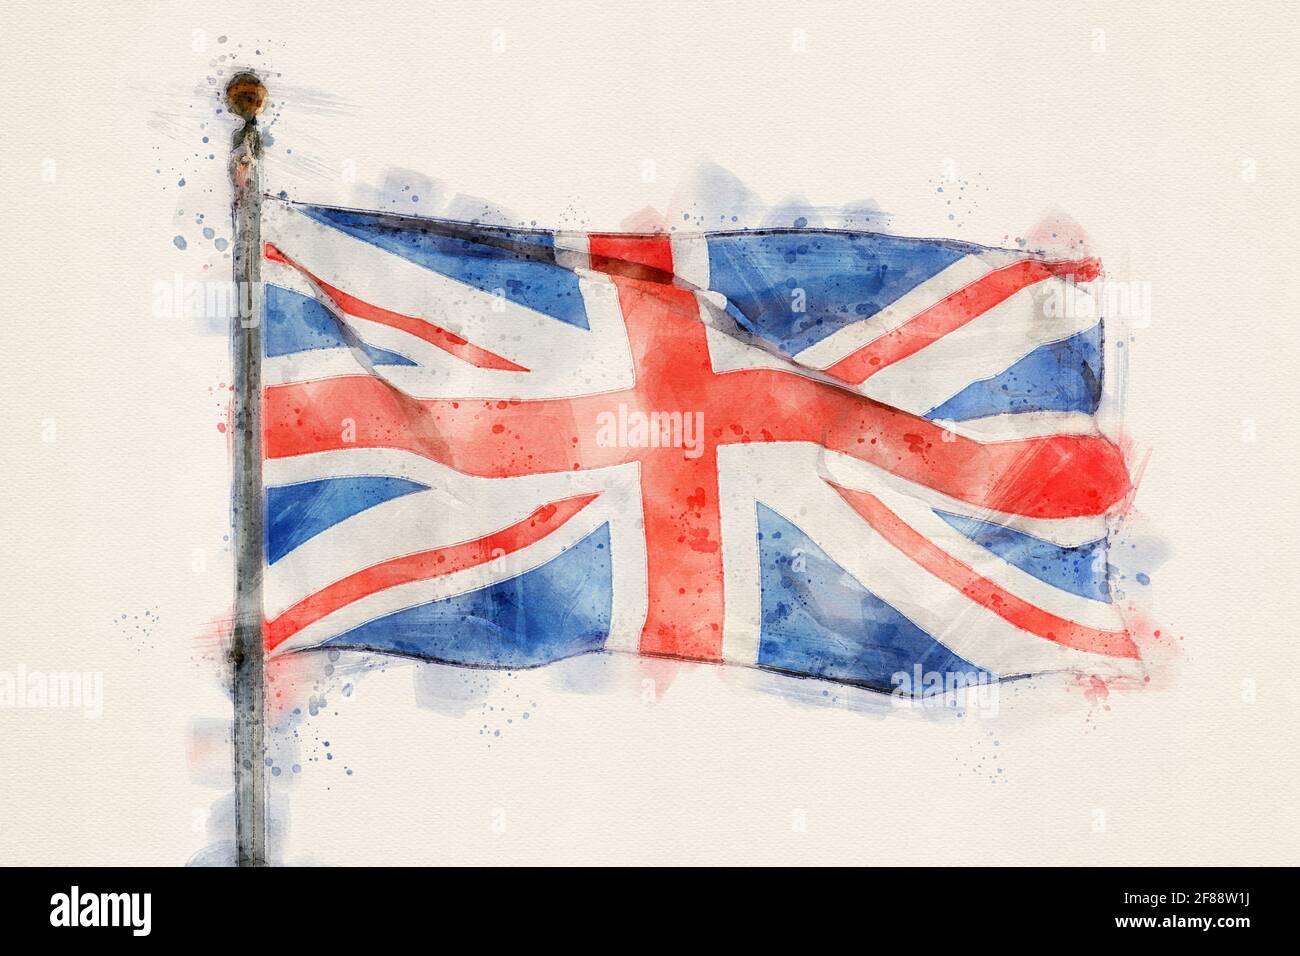 Drapeau britannique, drapeau du Royaume-Uni. Aquarelle, aquarelle. Banque D'Images